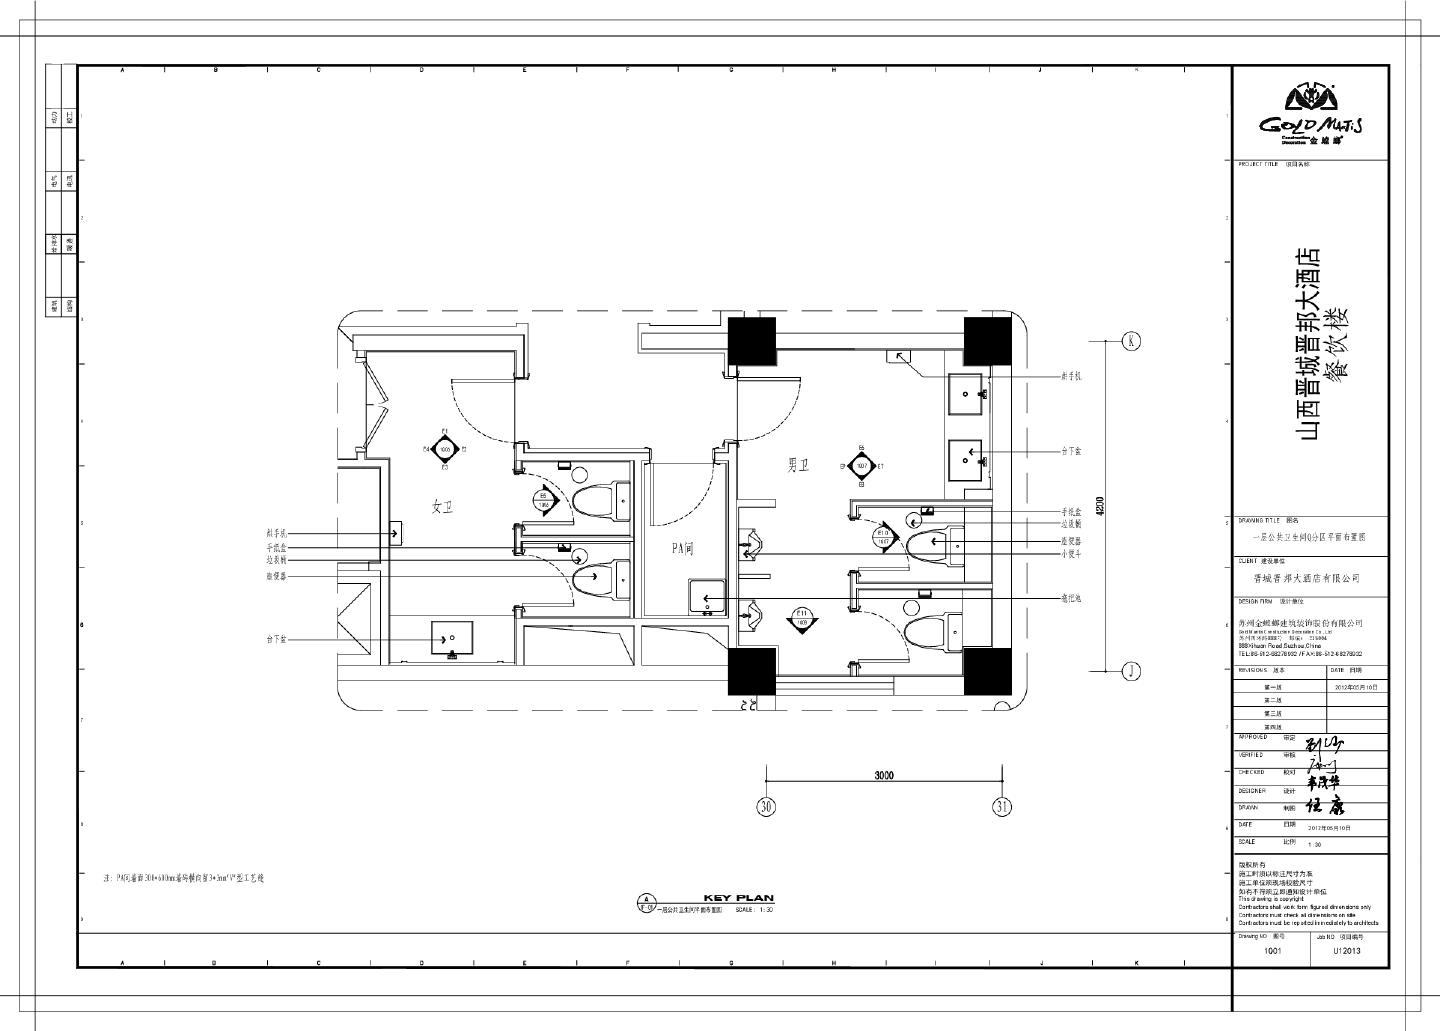 山西晋城晋邦大酒店餐饮楼-一层Q分区公共卫生间装饰设计CAD图